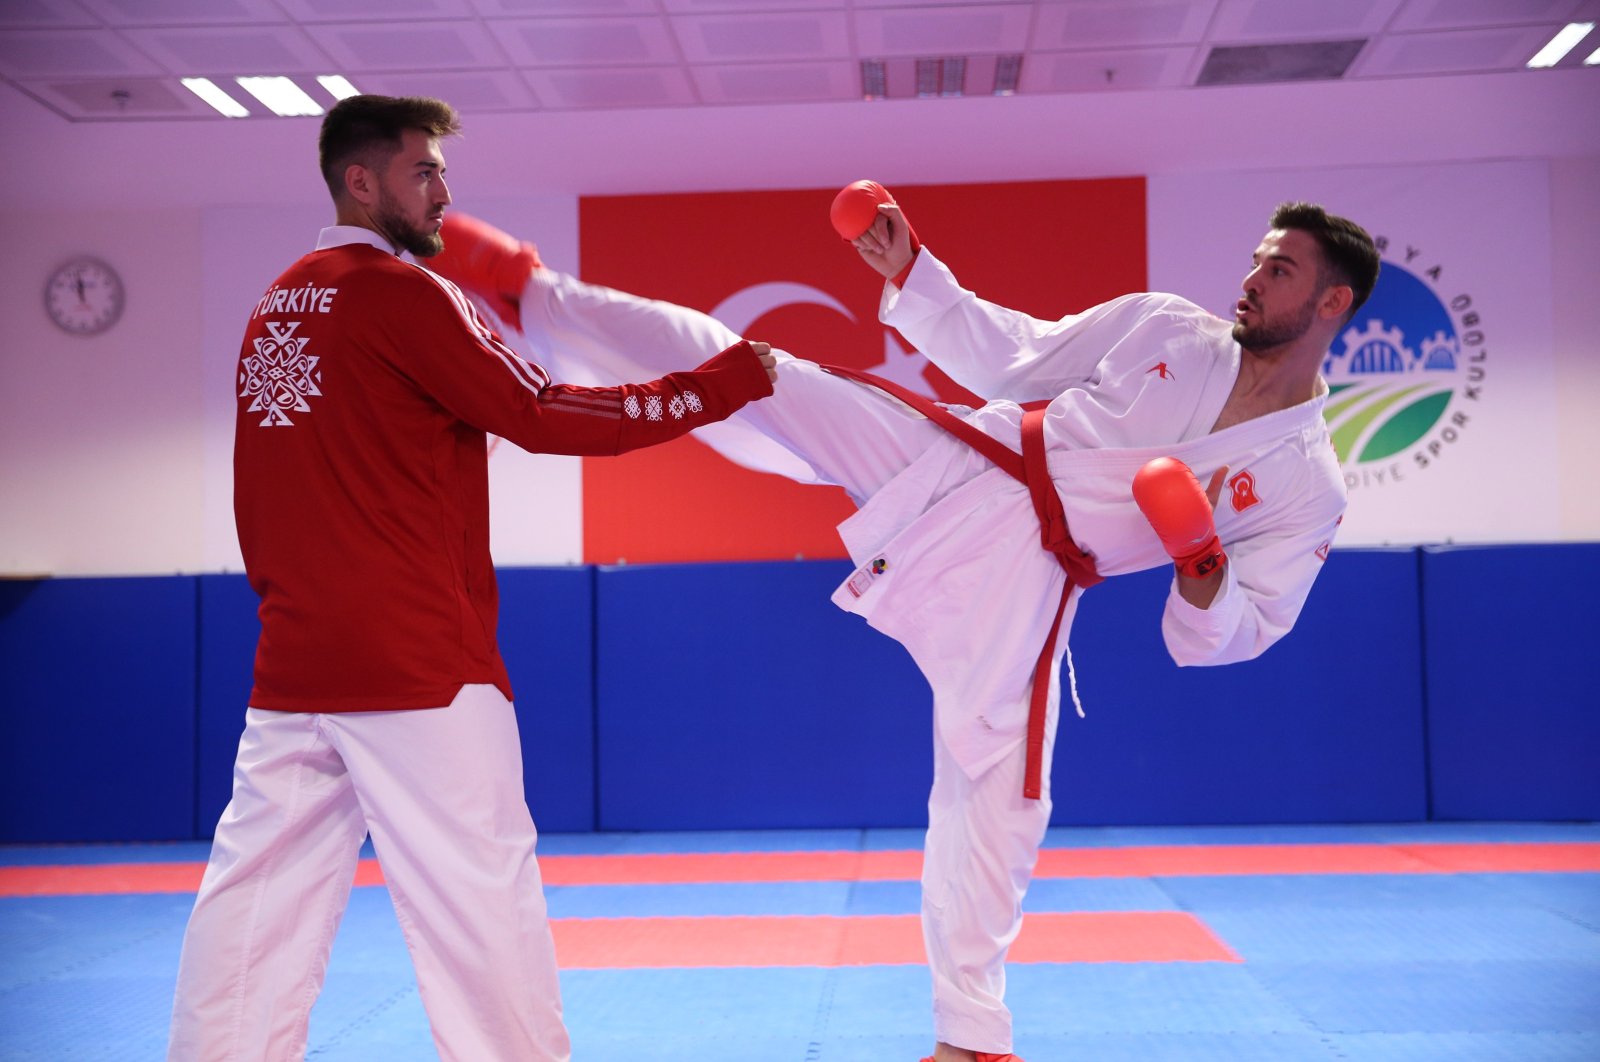 Türk karate şampiyonu önümüzdeki turnuvalarda daha fazla zafer hedefliyor